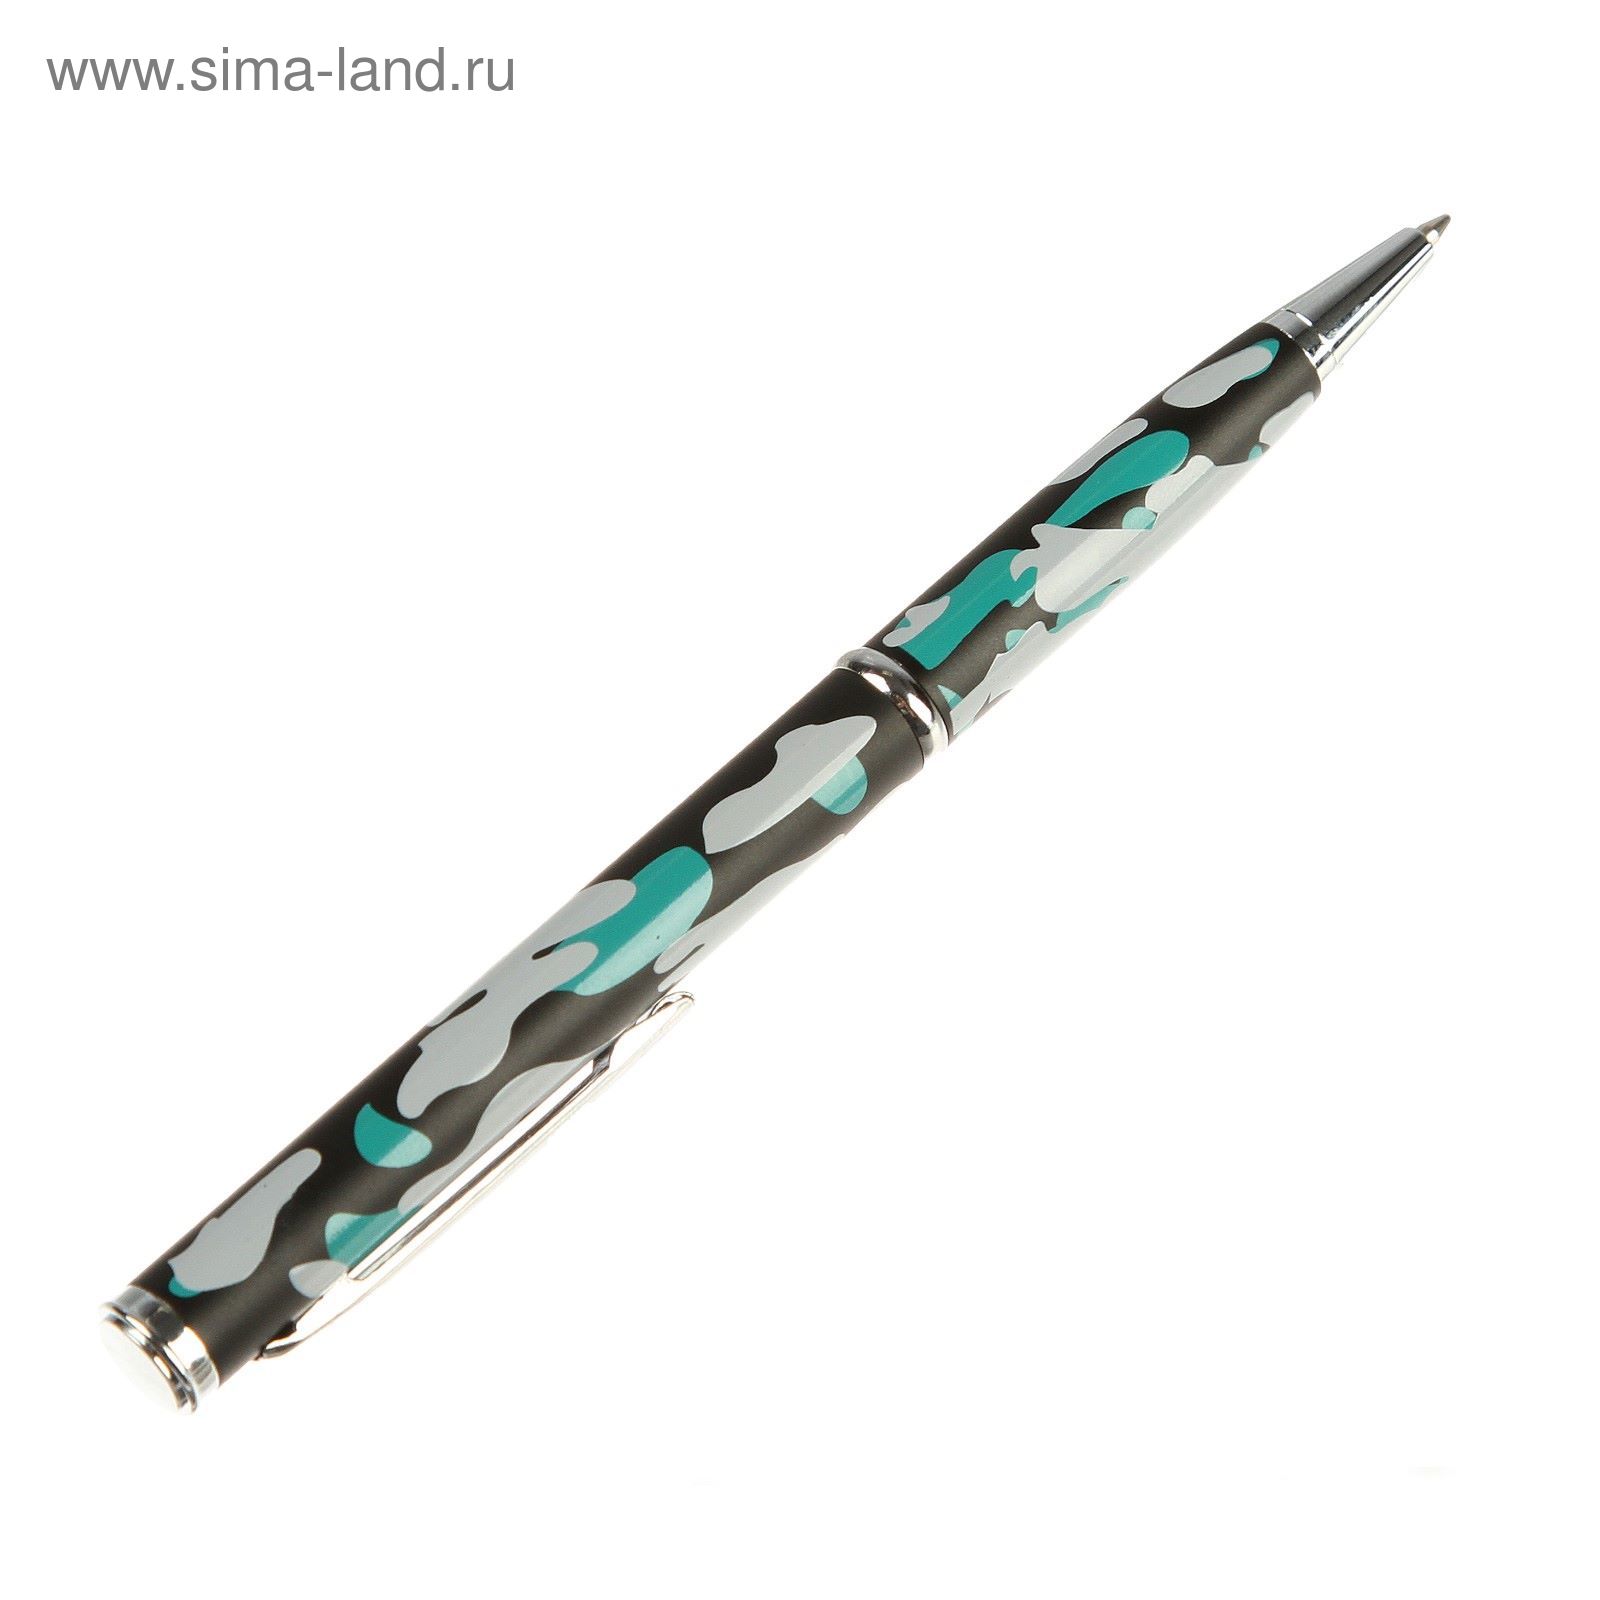 Нож-ручка, лезвие копьеобразное 5,5см, камуфляжный цвет, рукоять 7,2см